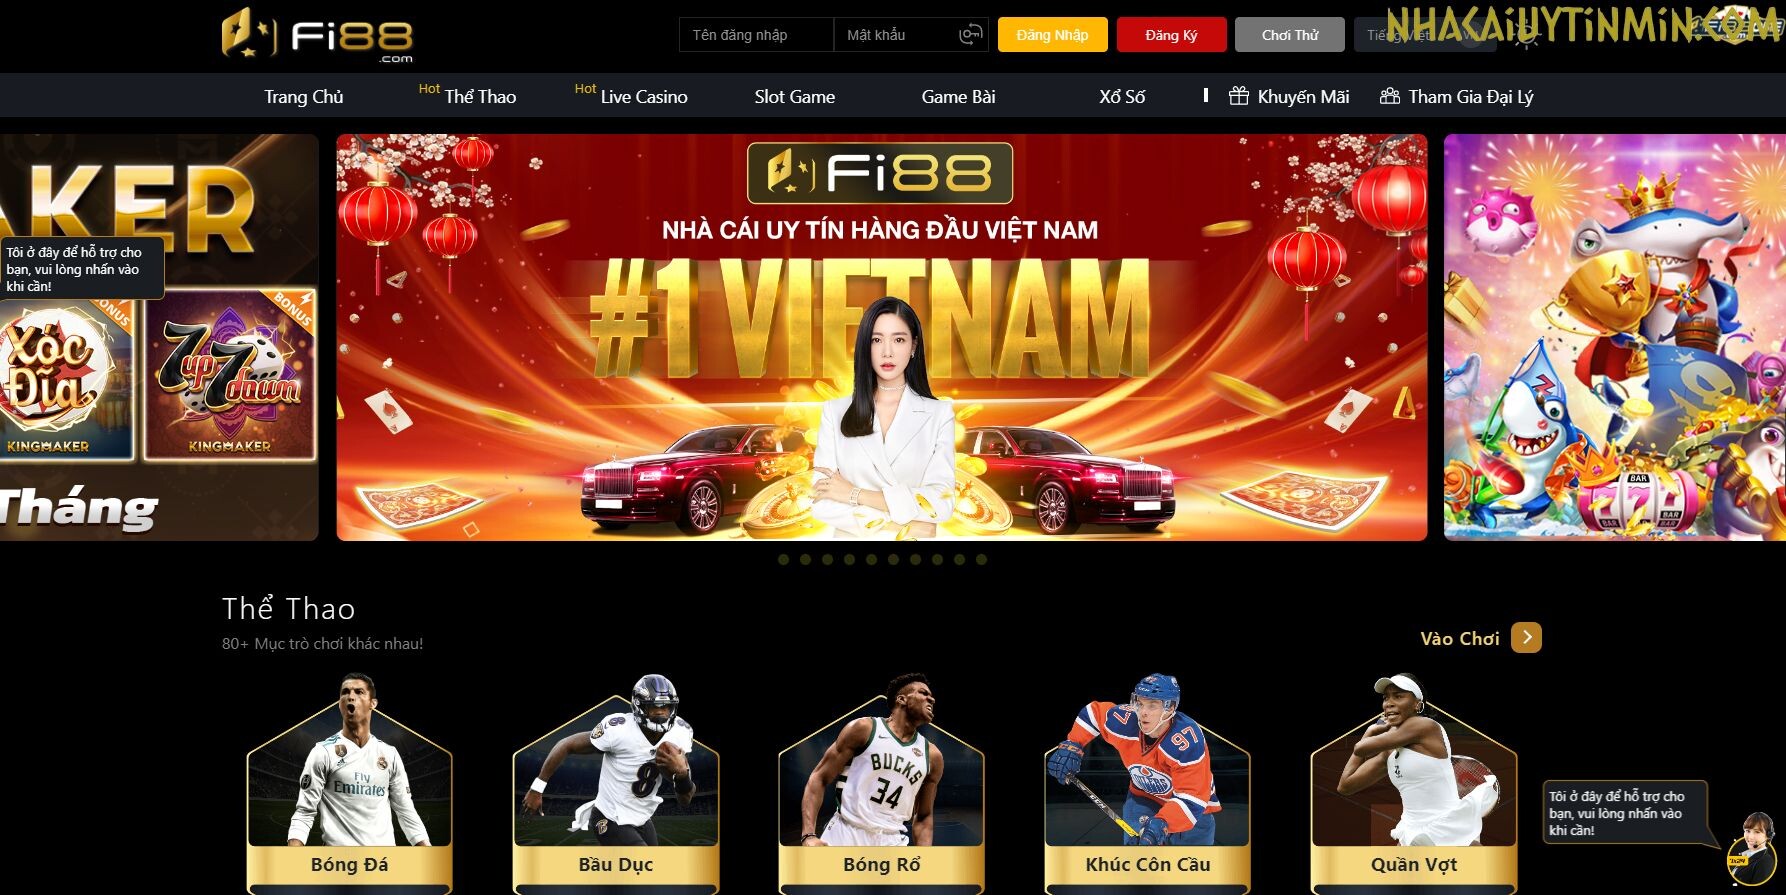 Fi88 cũng được xếp vào danh sách các nhà cái cá cược bóng đá lớn hàng đầu tại Việt Nam